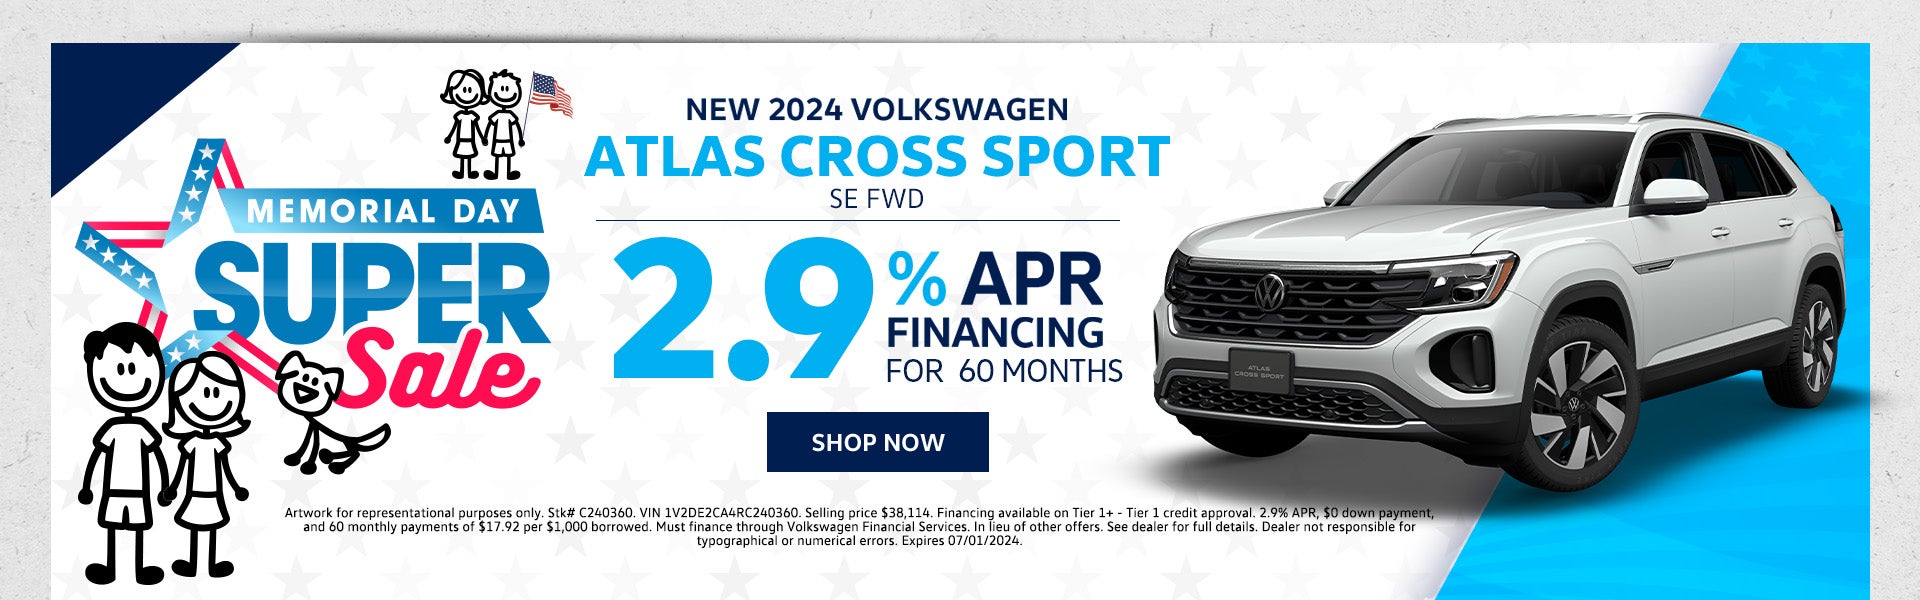 New 2024 VW Atlas Cross Sport SE FWD